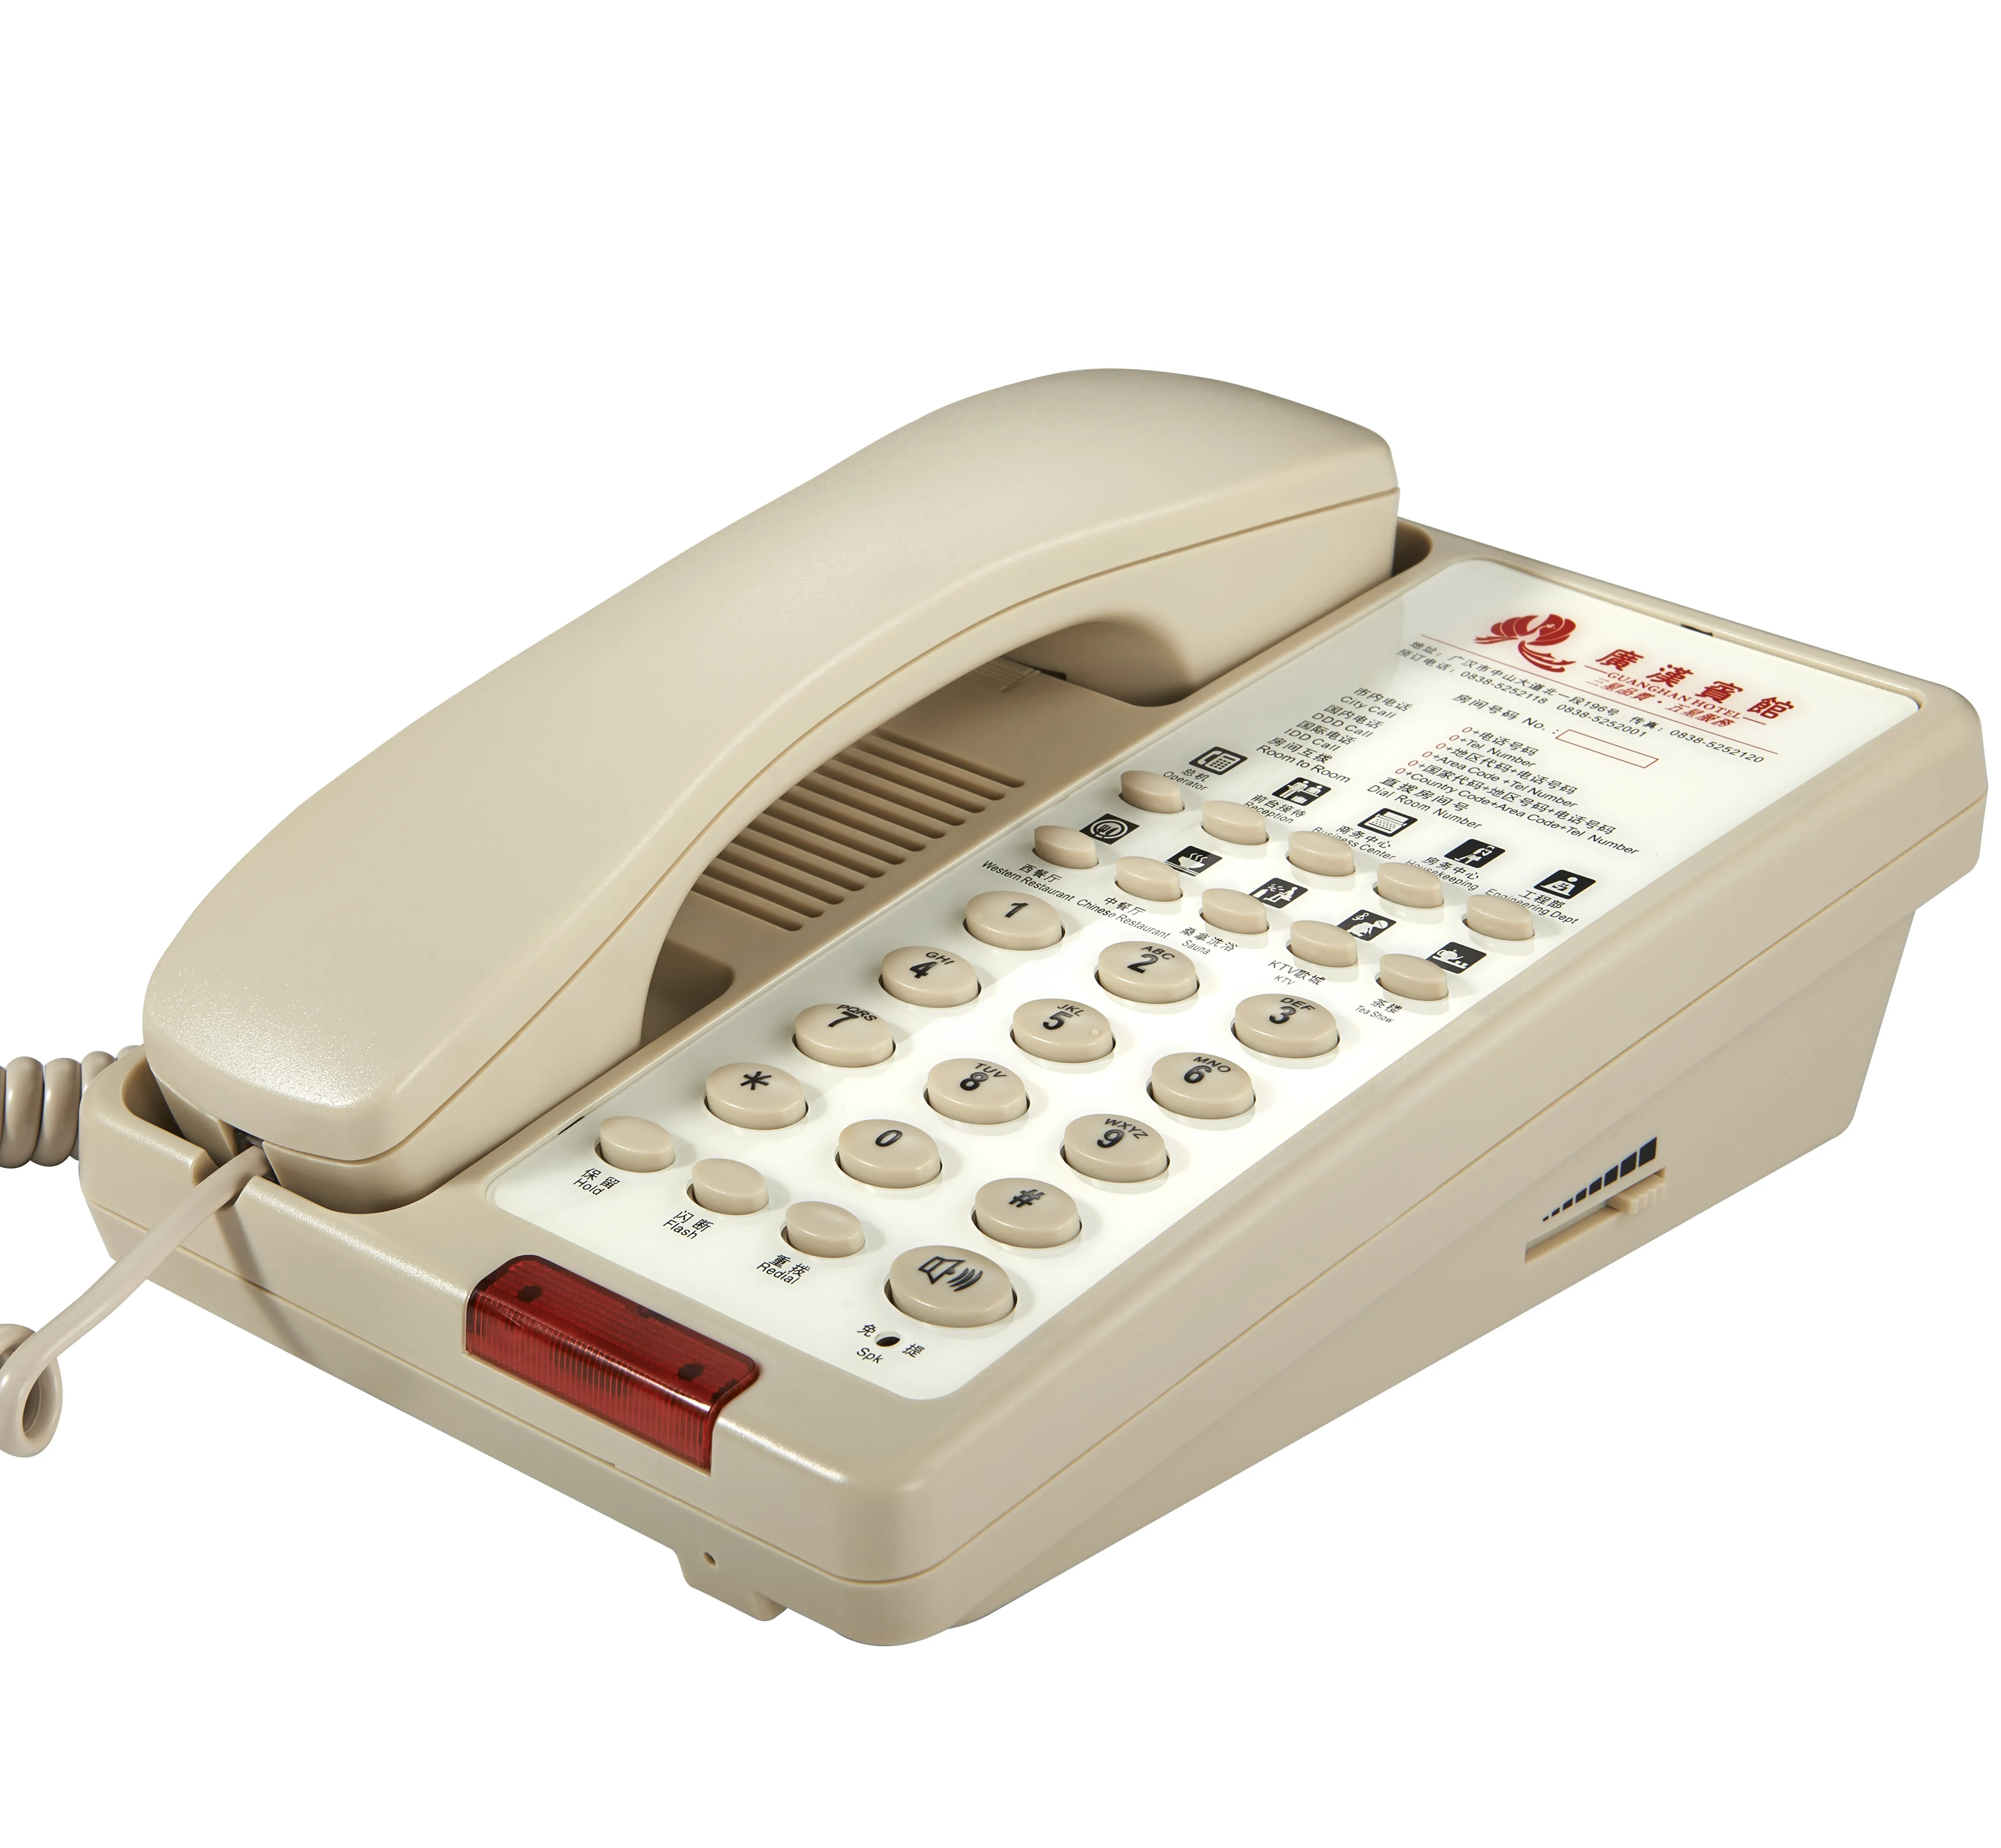 Крым телефон стационарный. Телефонный набор. Стационарный телефон в отеле. Голосовой телефон. Телефон с автонабором номера стационарный.